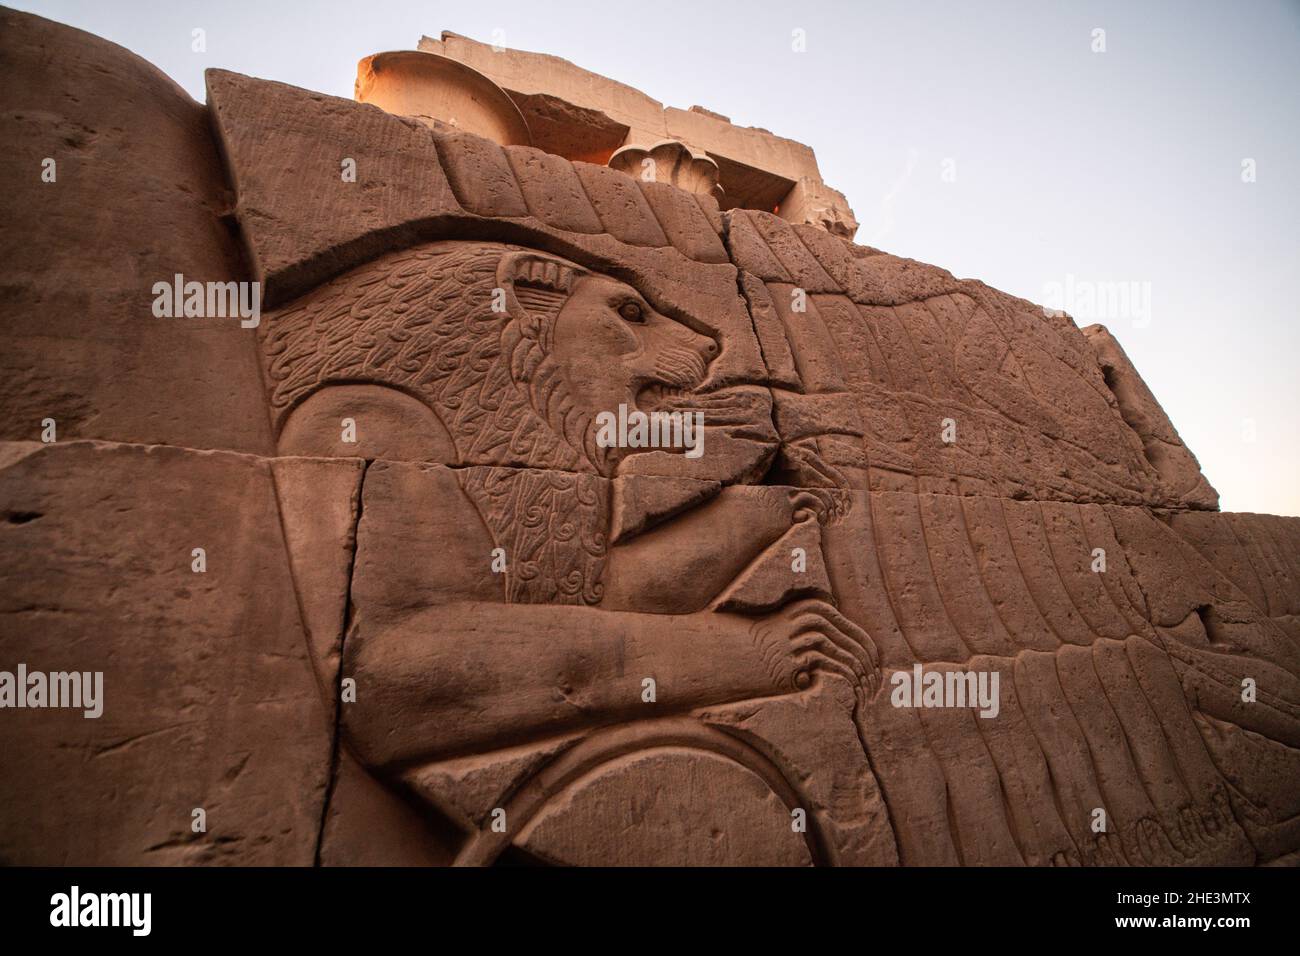 Une sculpture ancienne dans les ruines du temple de Kom Ombo en Égypte dépeint un lion piquant une main. Banque D'Images